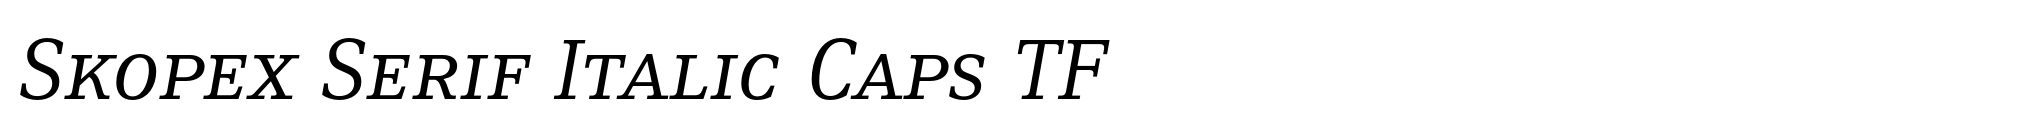 Skopex Serif Italic Caps TF image